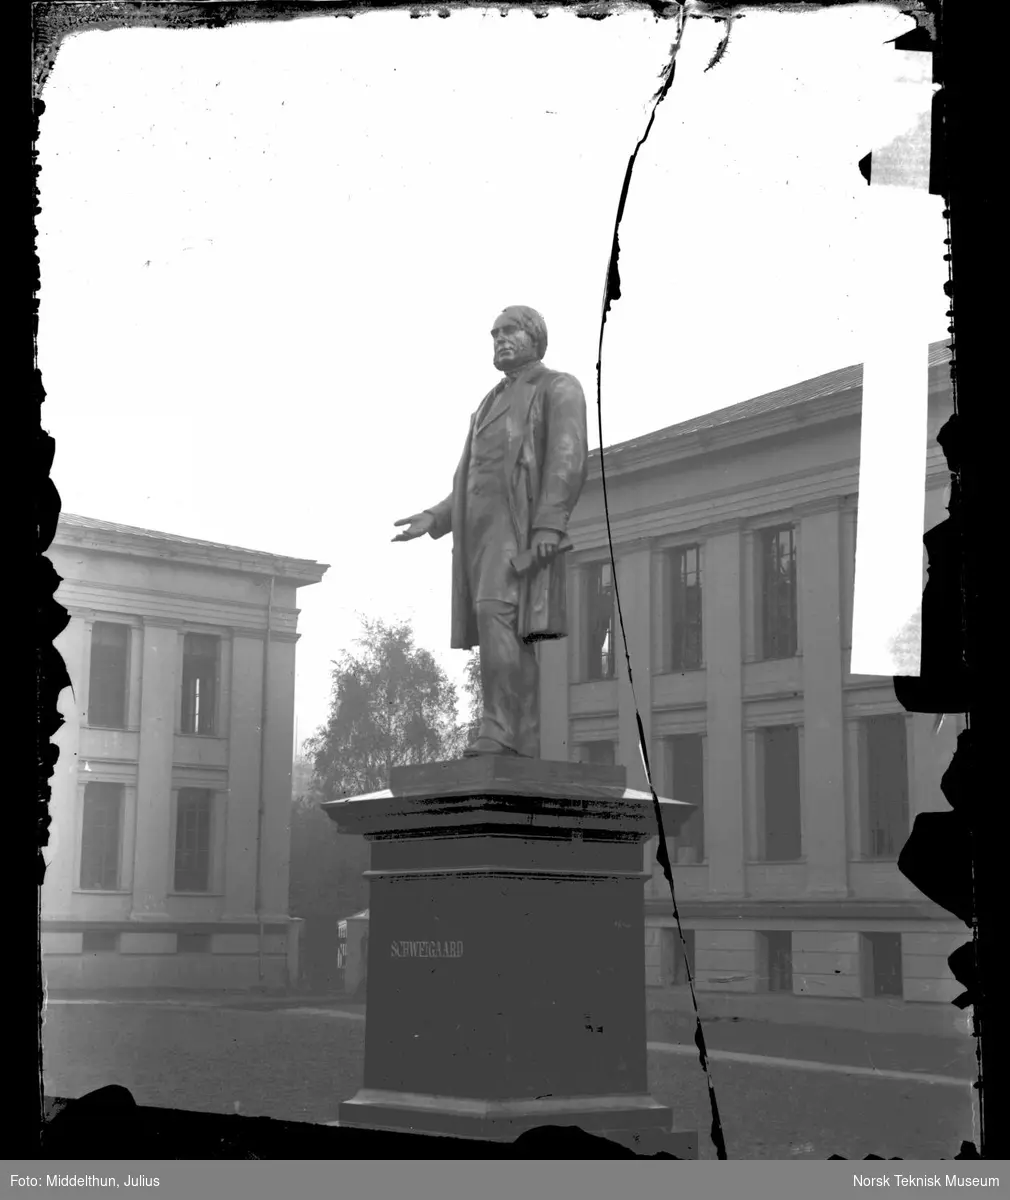 Universitetet i Oslo med Schweigaards statue